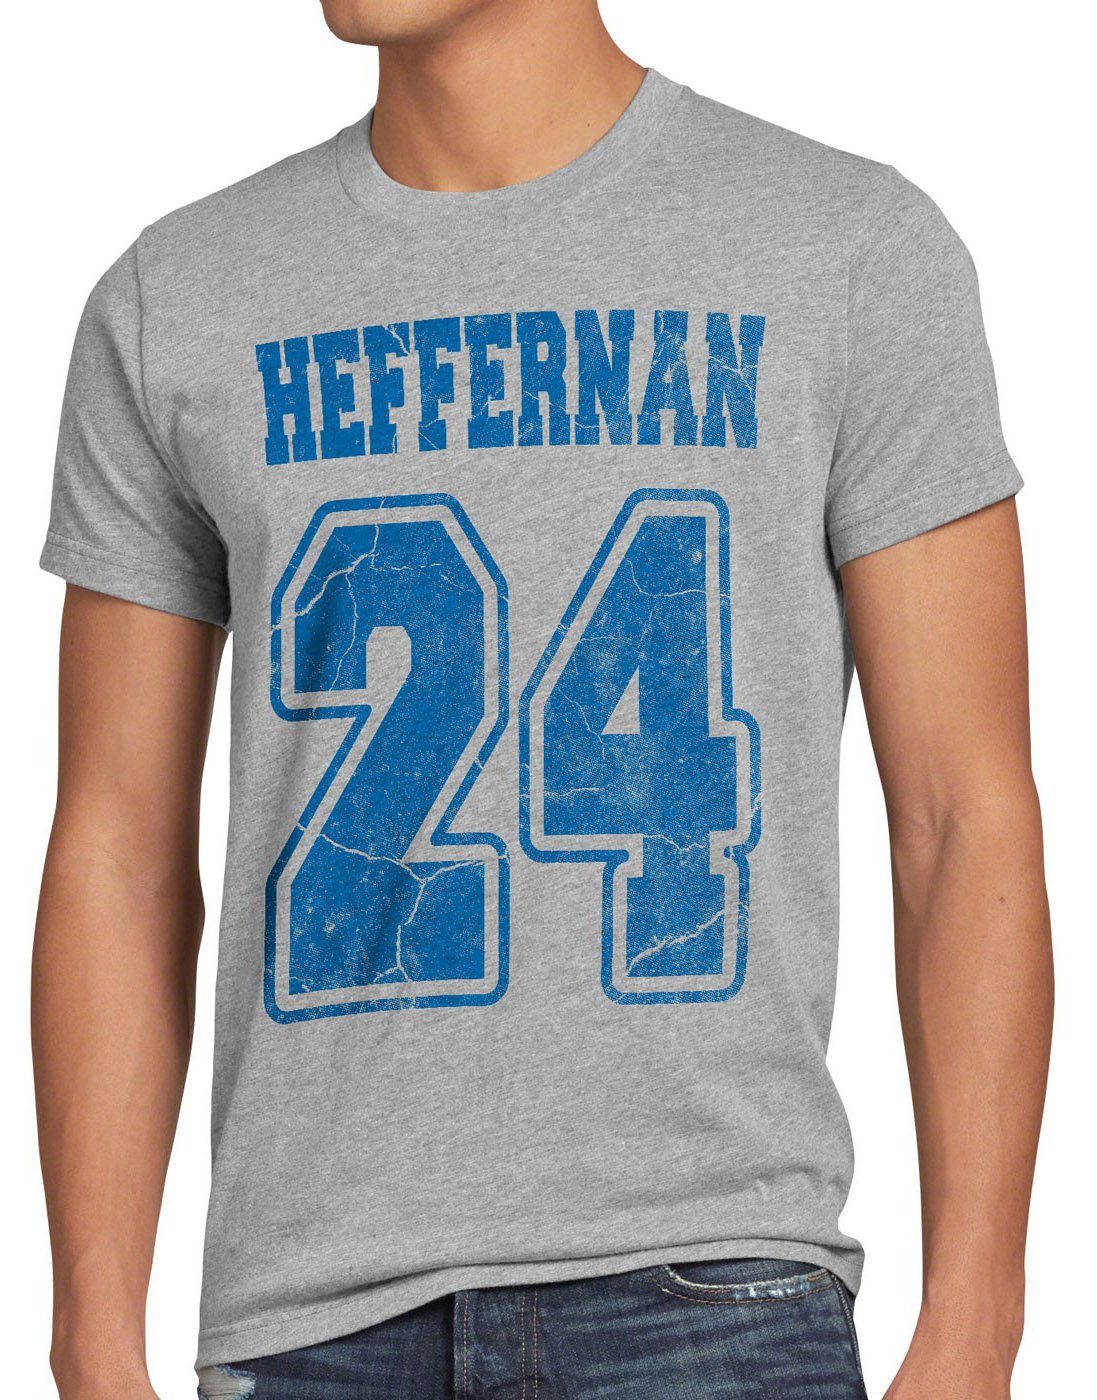 style3 Print-Shirt Herren T-Shirt Heffernan 24 doug the king of IPS coopers queens sitcom spooner grau meliert